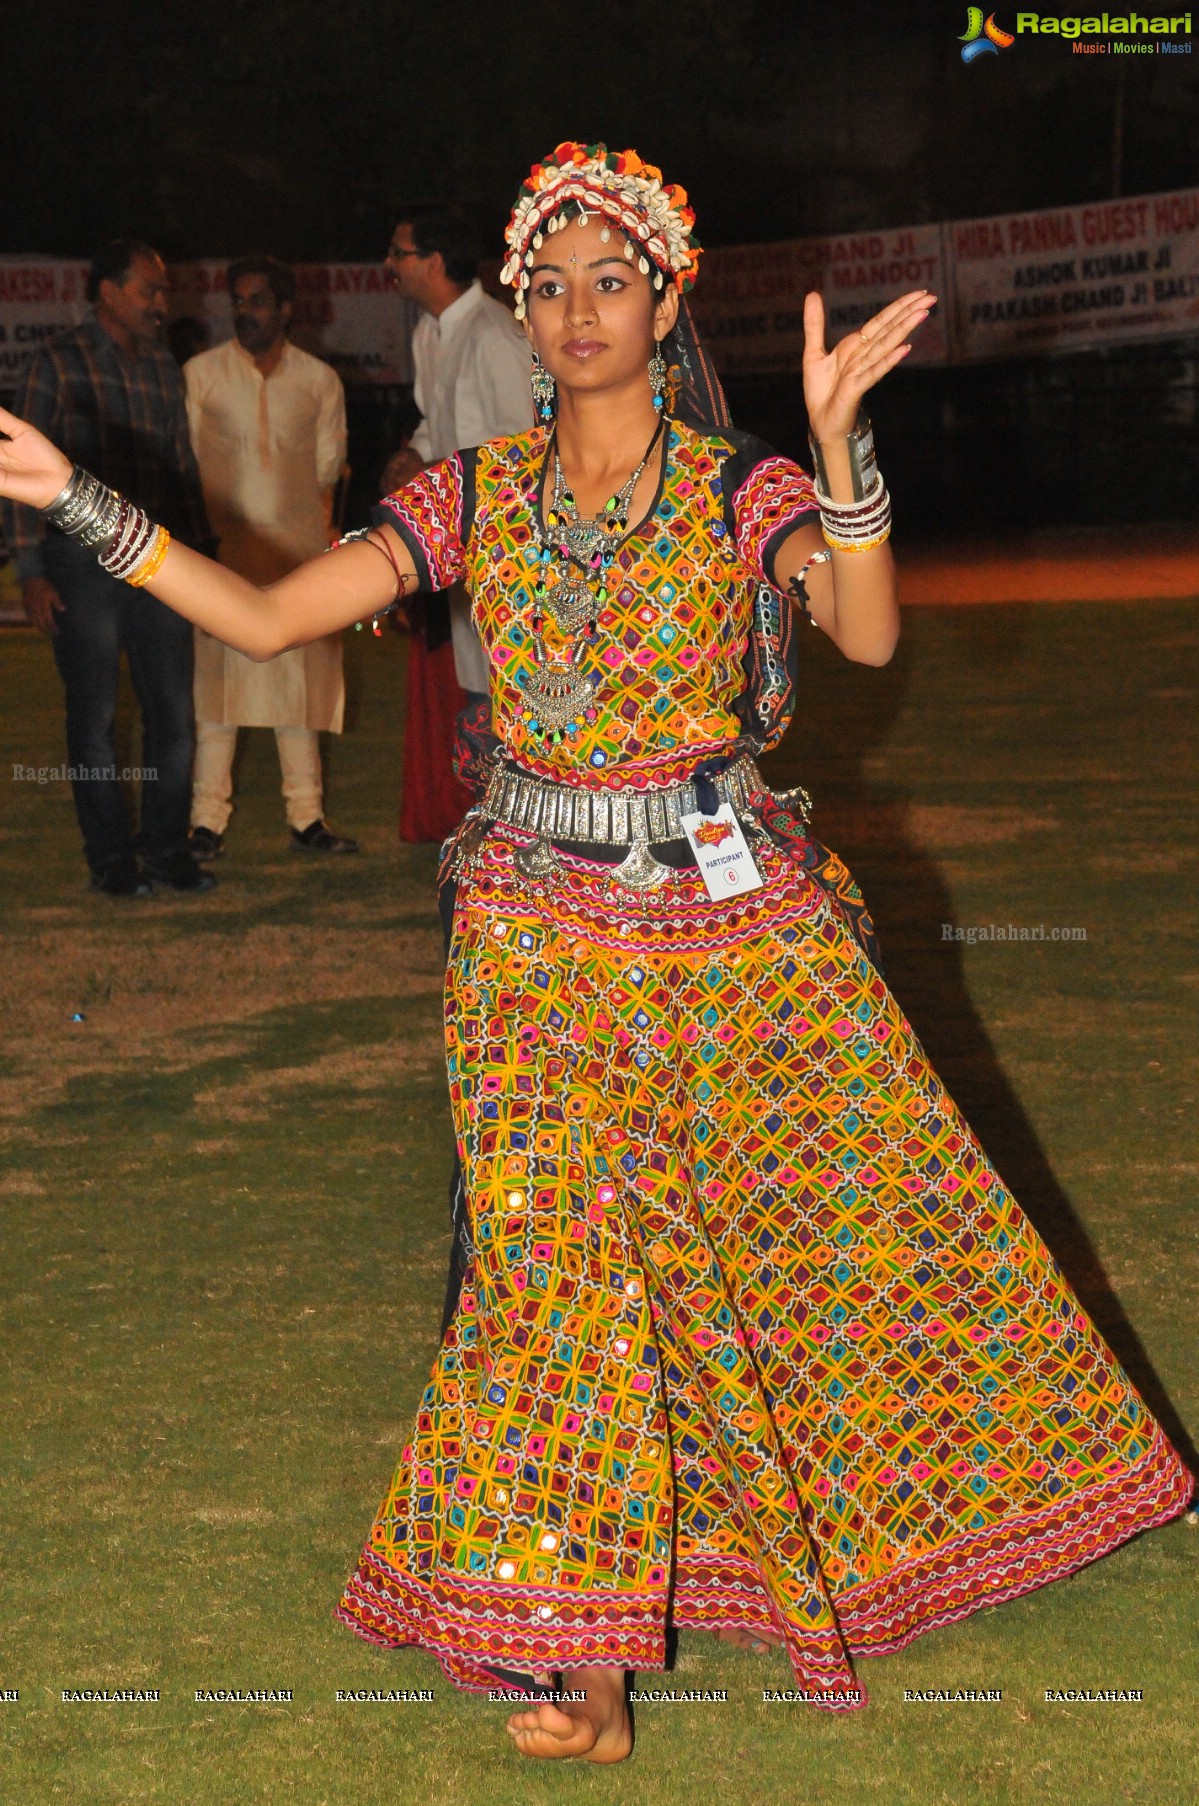 Mahavir International Udaan Dandiya Raas Season II, Hyderabad